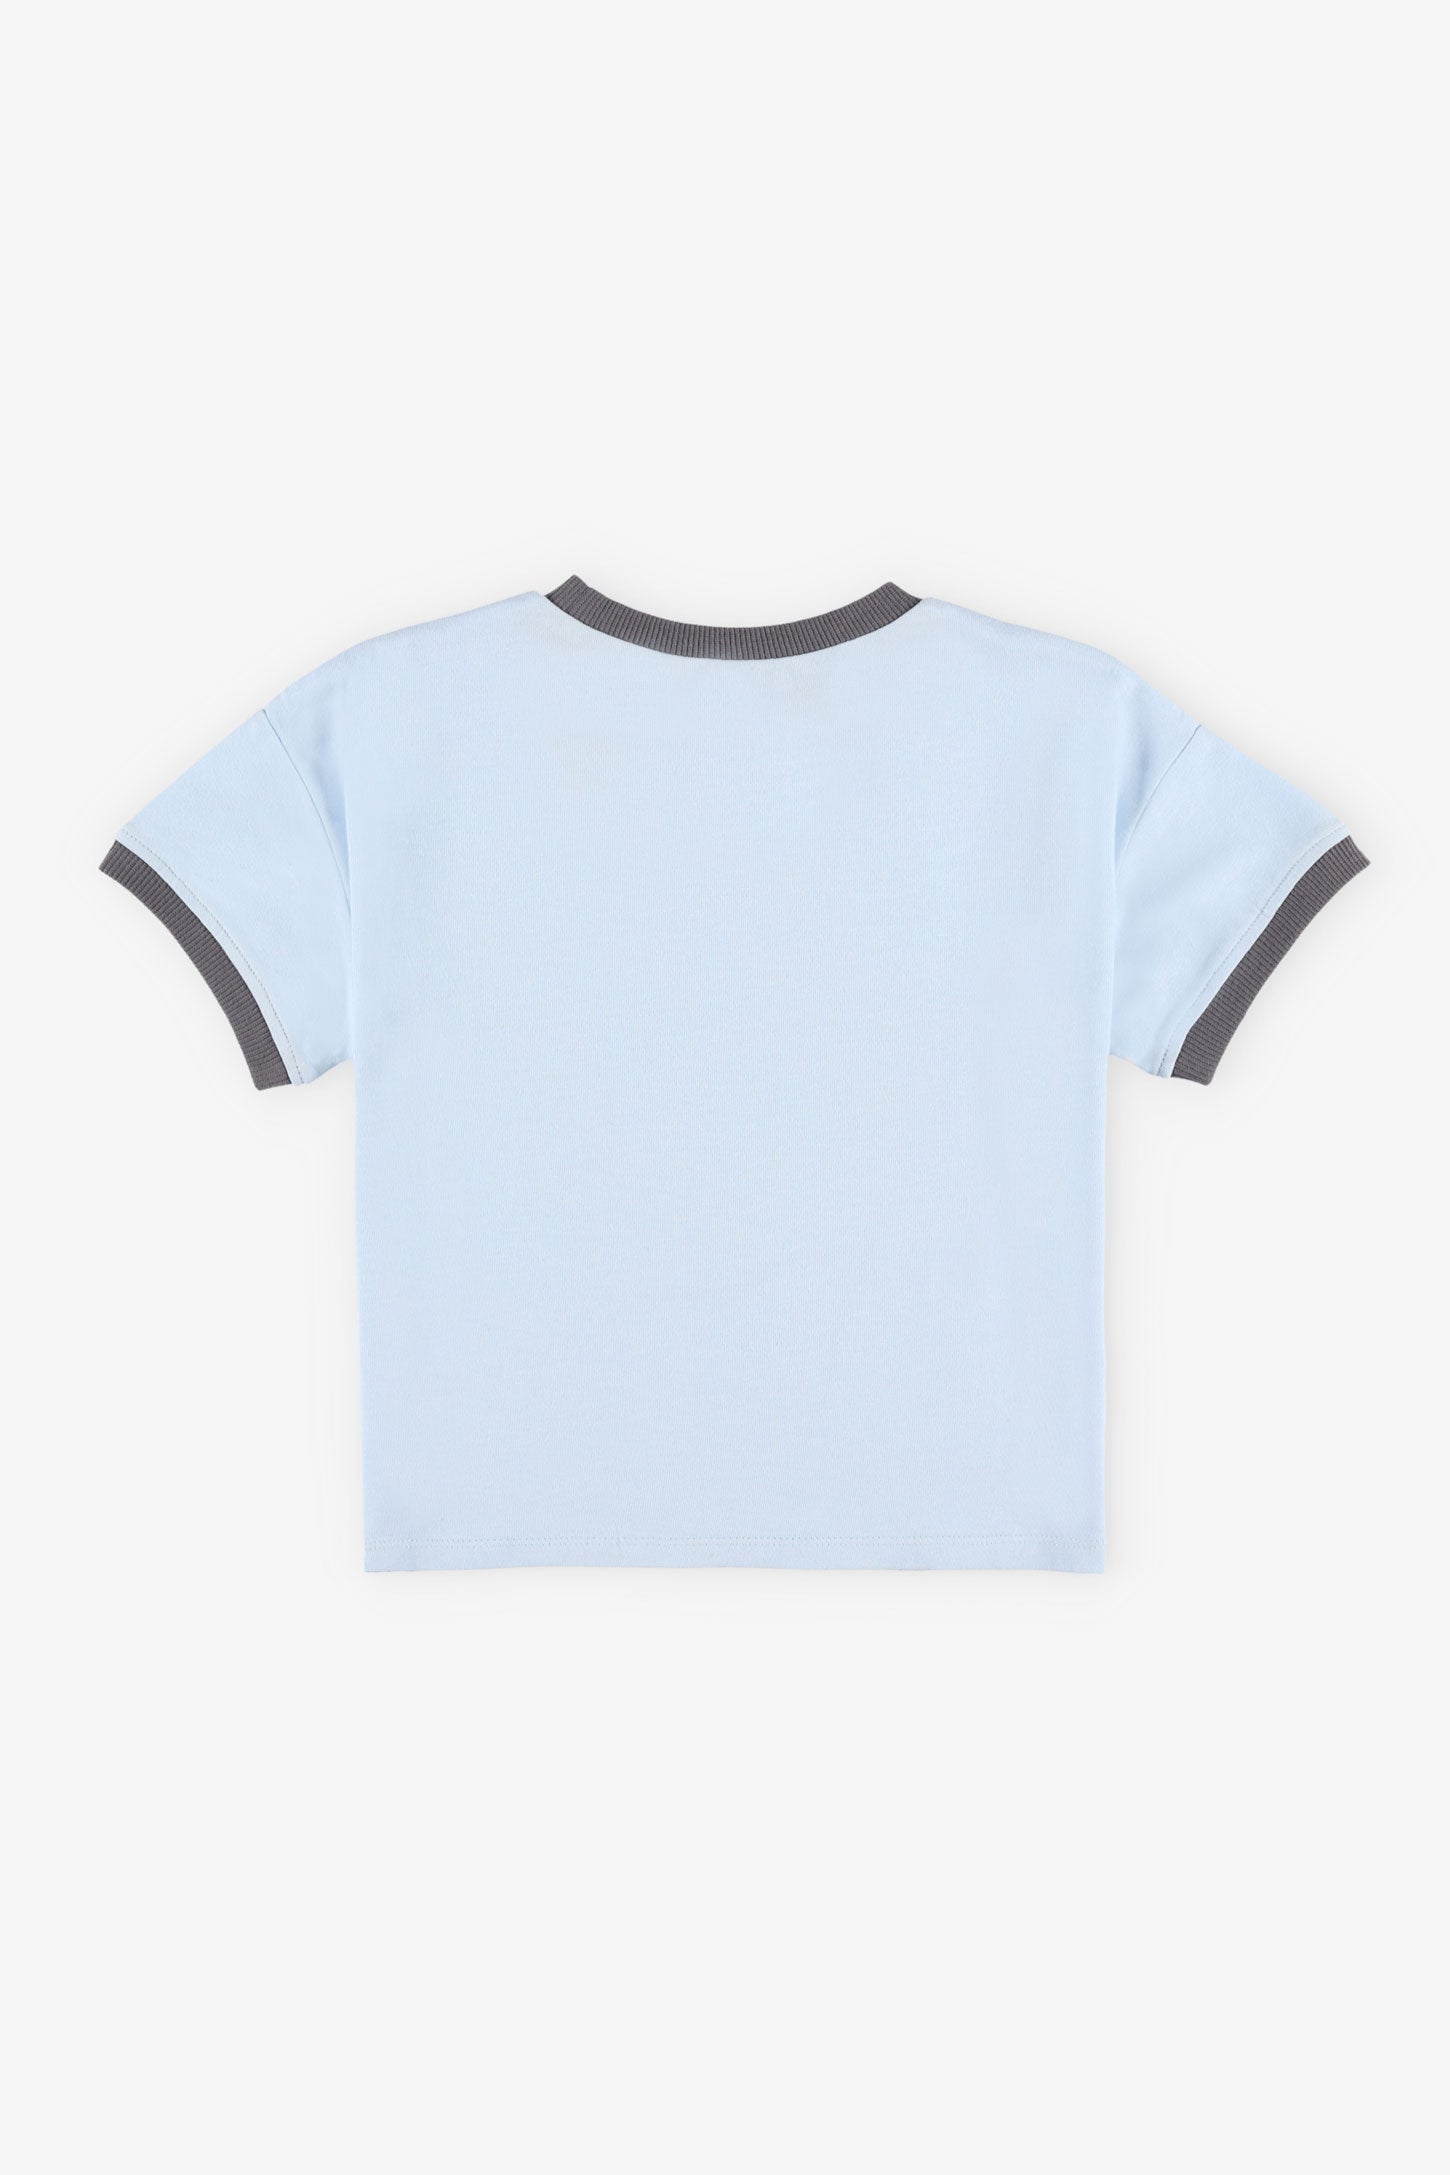 T-shirt imprimé en coton, 2T-3T - Bébé garçon && BLEU